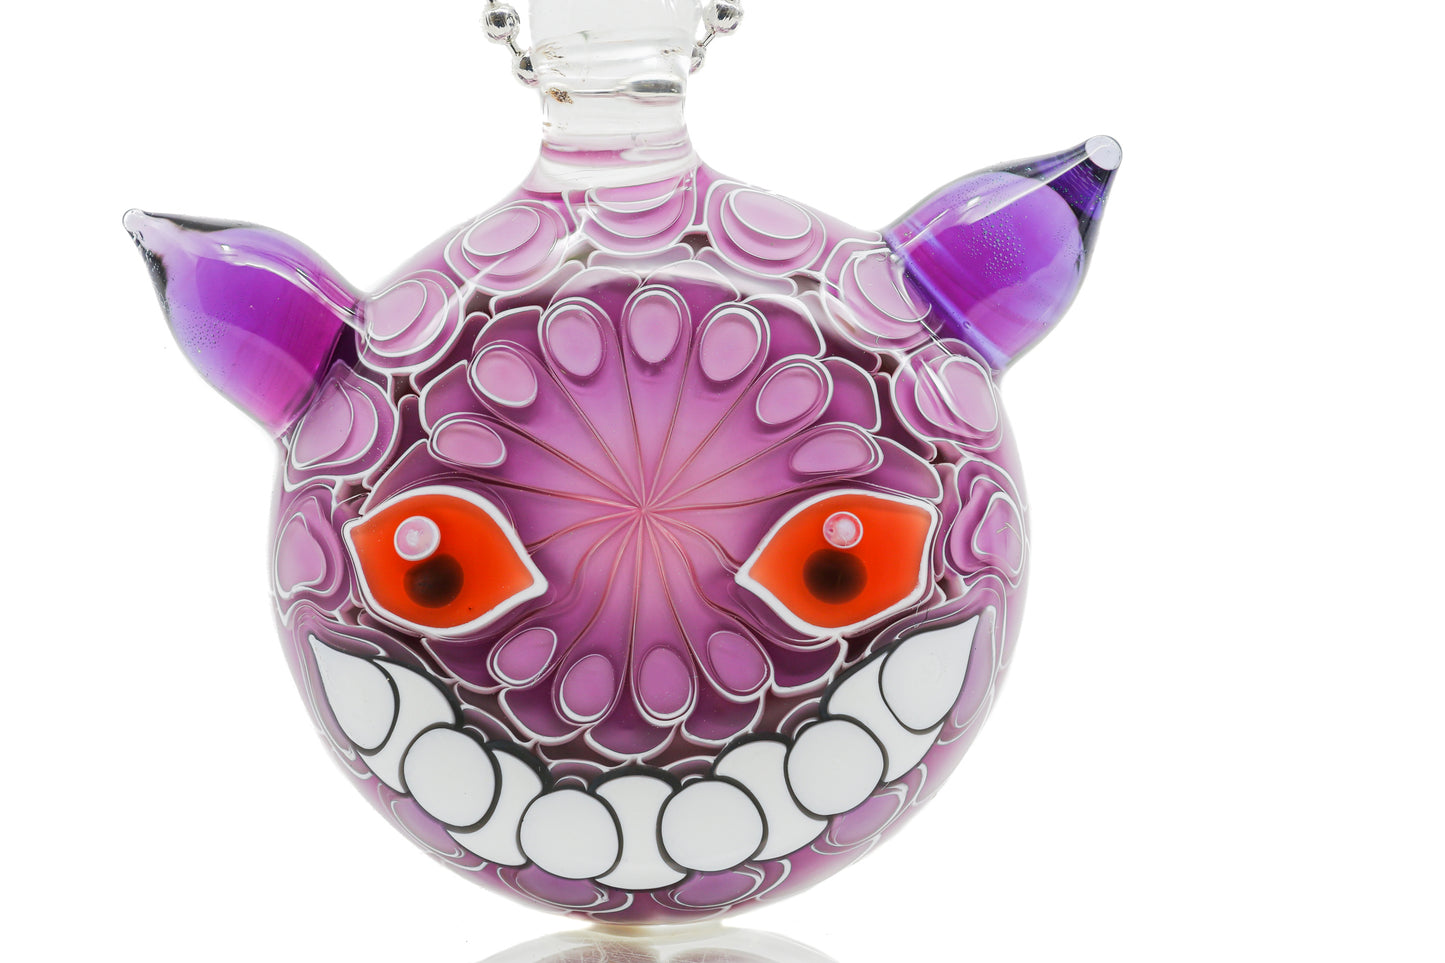 Olour Glass “Pokémon” Pendant